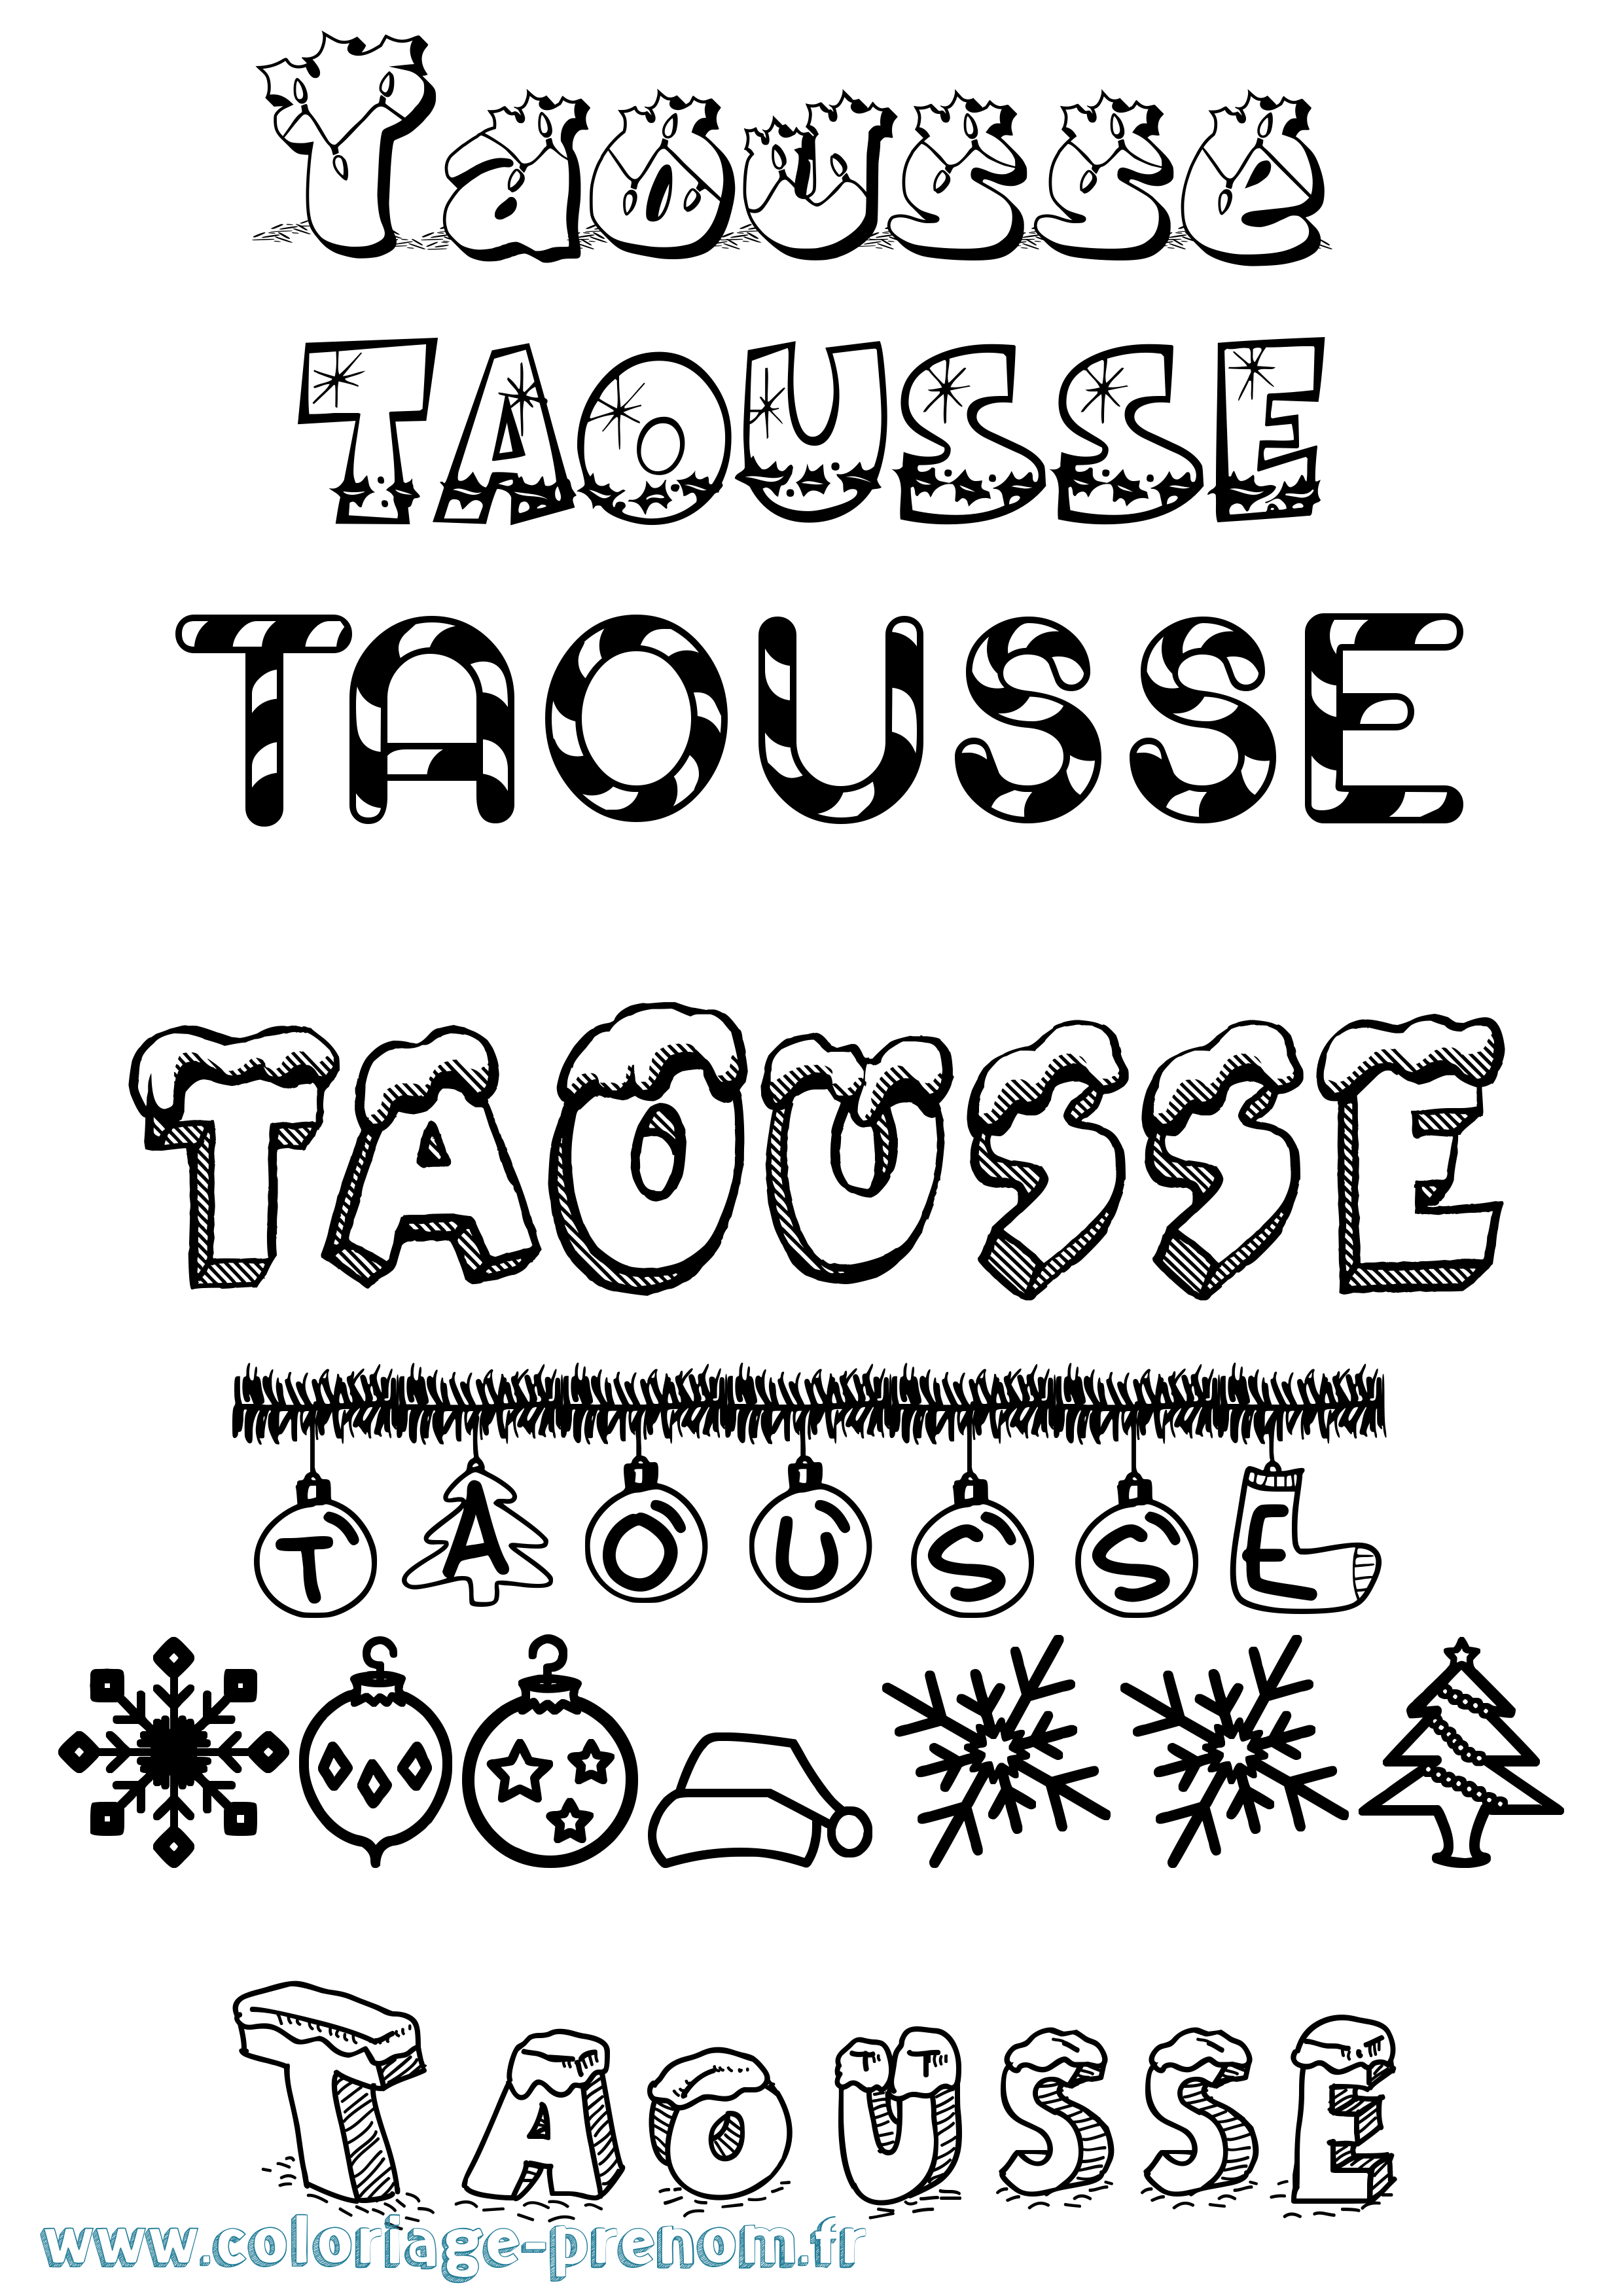 Coloriage prénom Taousse Noël